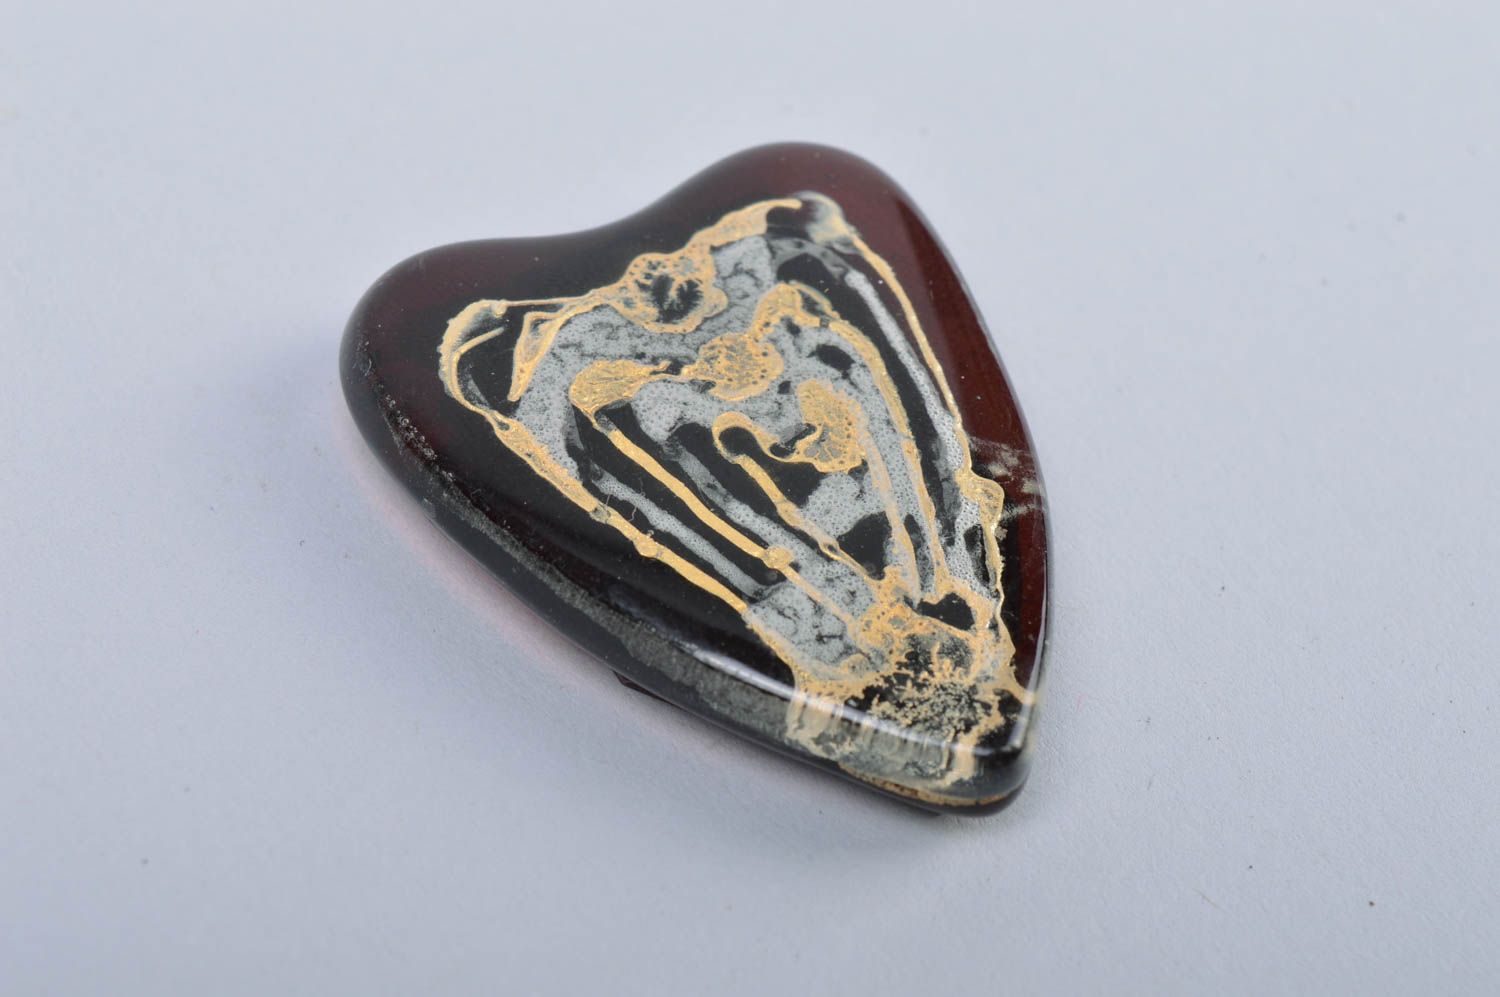 Handmade dark heart shaped designer fused glass fridge magnet for interior decor photo 3